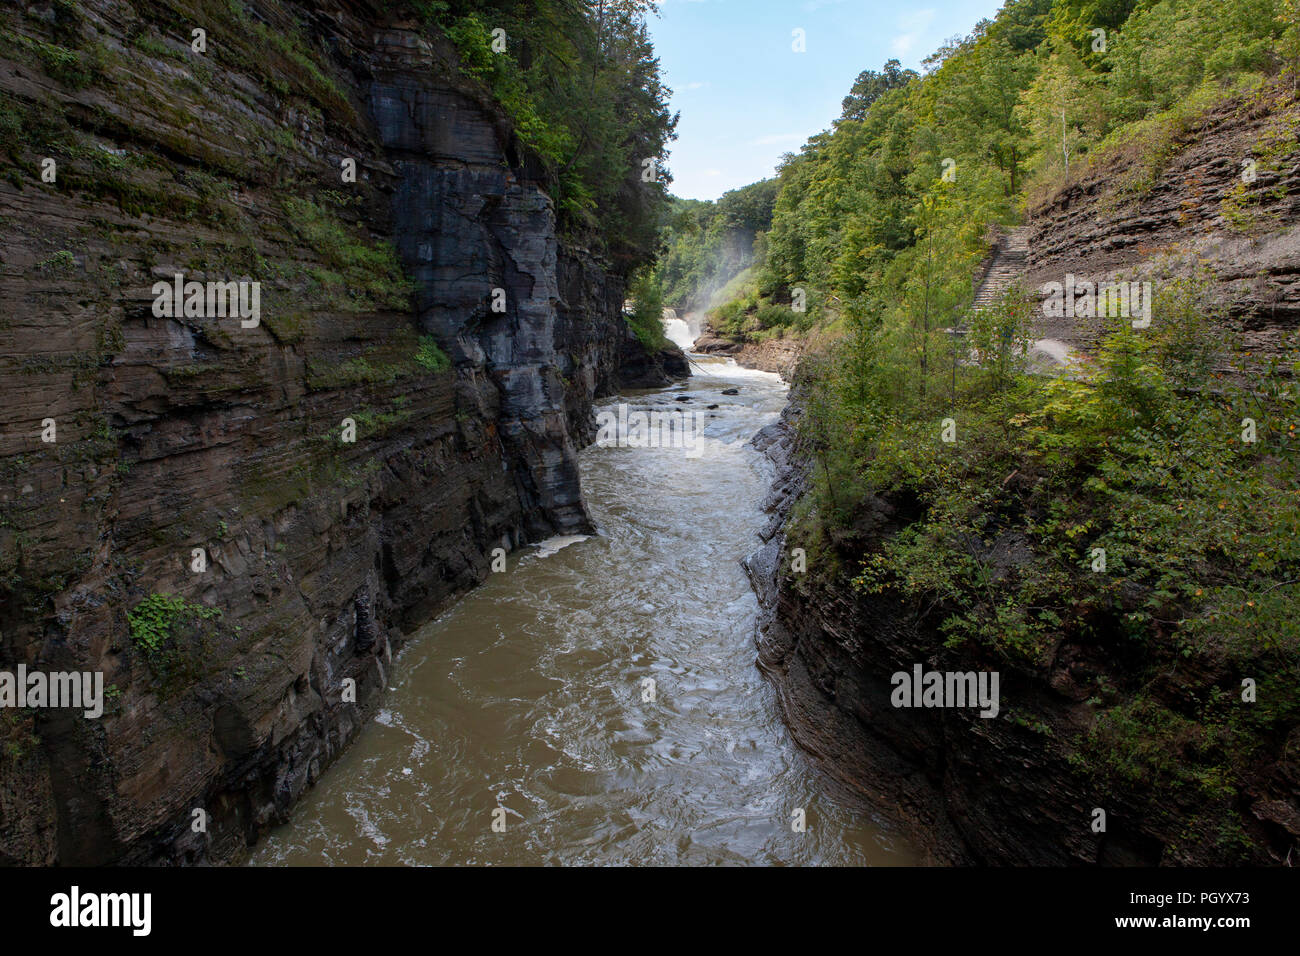 La rivière Genesee passe par une gorge à Letchworth State Park en Castille, NY, USA. Banque D'Images